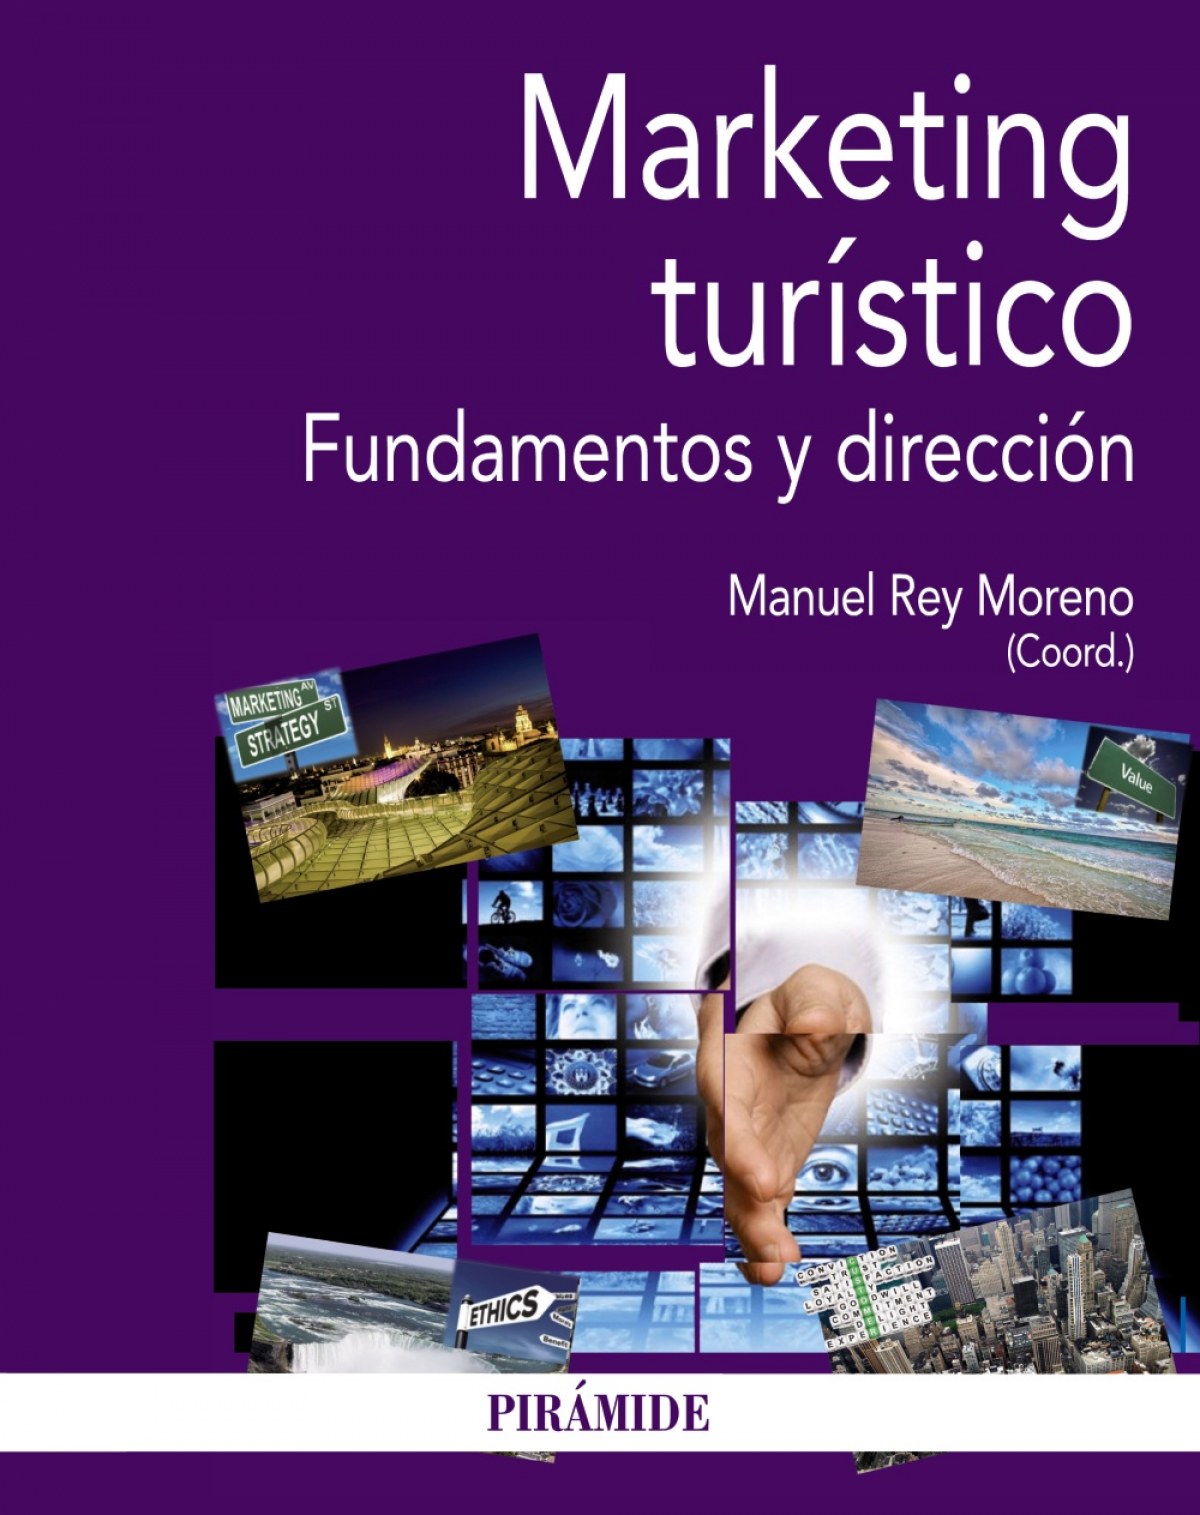 Marketing turistico:fundamentos y direccion.(turismo) fundamentos y di - Rey Moreno, Manuel